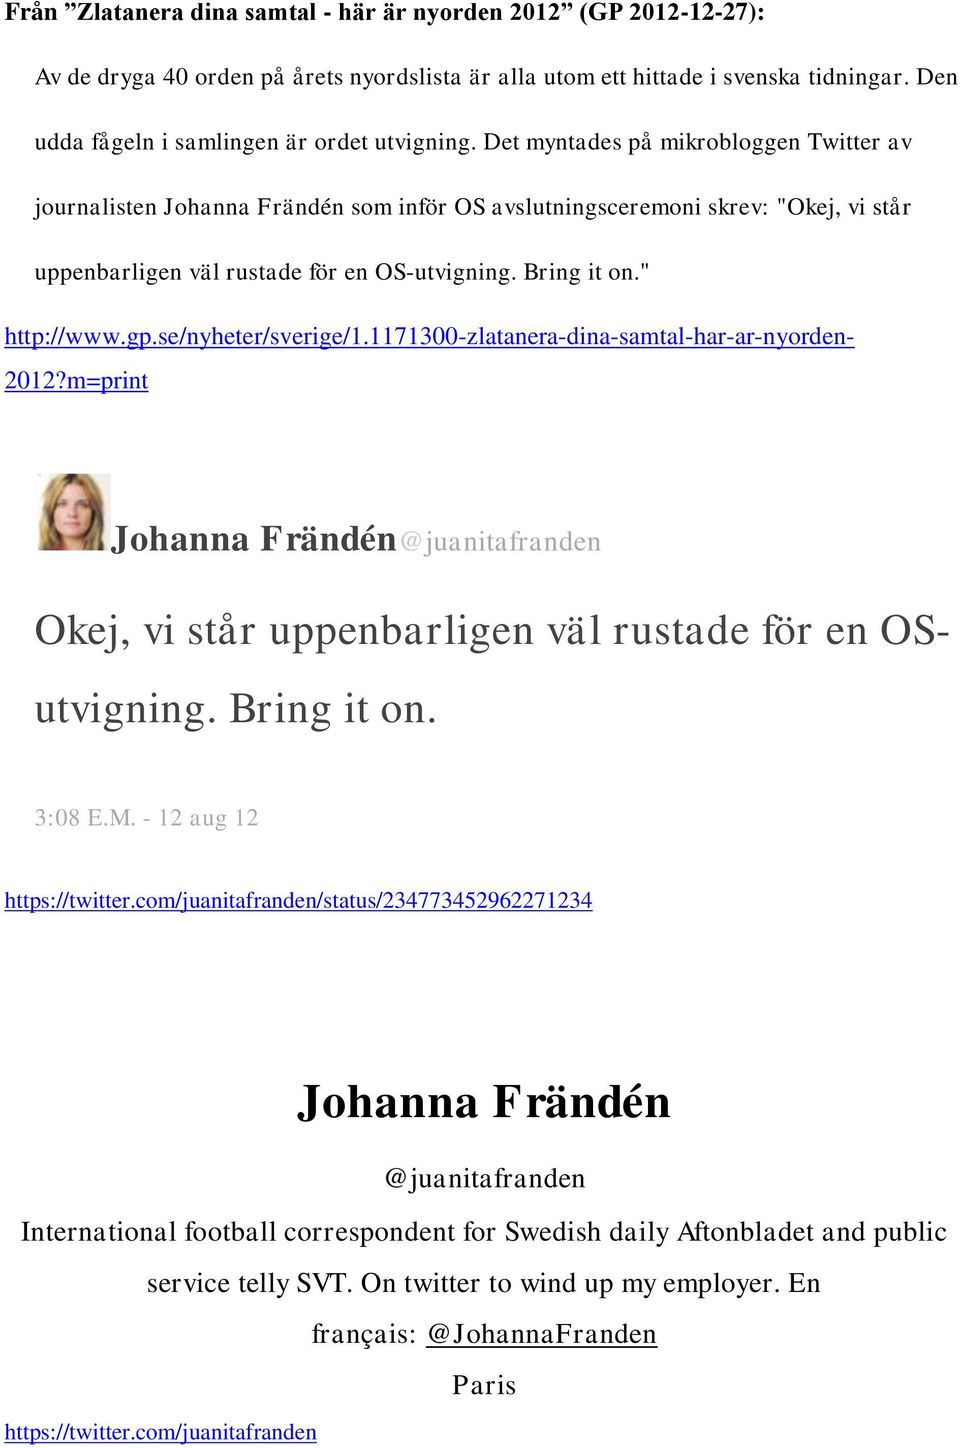 Det myntades på mikrobloggen Twitter av journalisten Johanna Frändén som inför OS avslutningsceremoni skrev: "Okej, vi står uppenbarligen väl rustade för en OS-utvigning. Bring it on." http://www.gp.